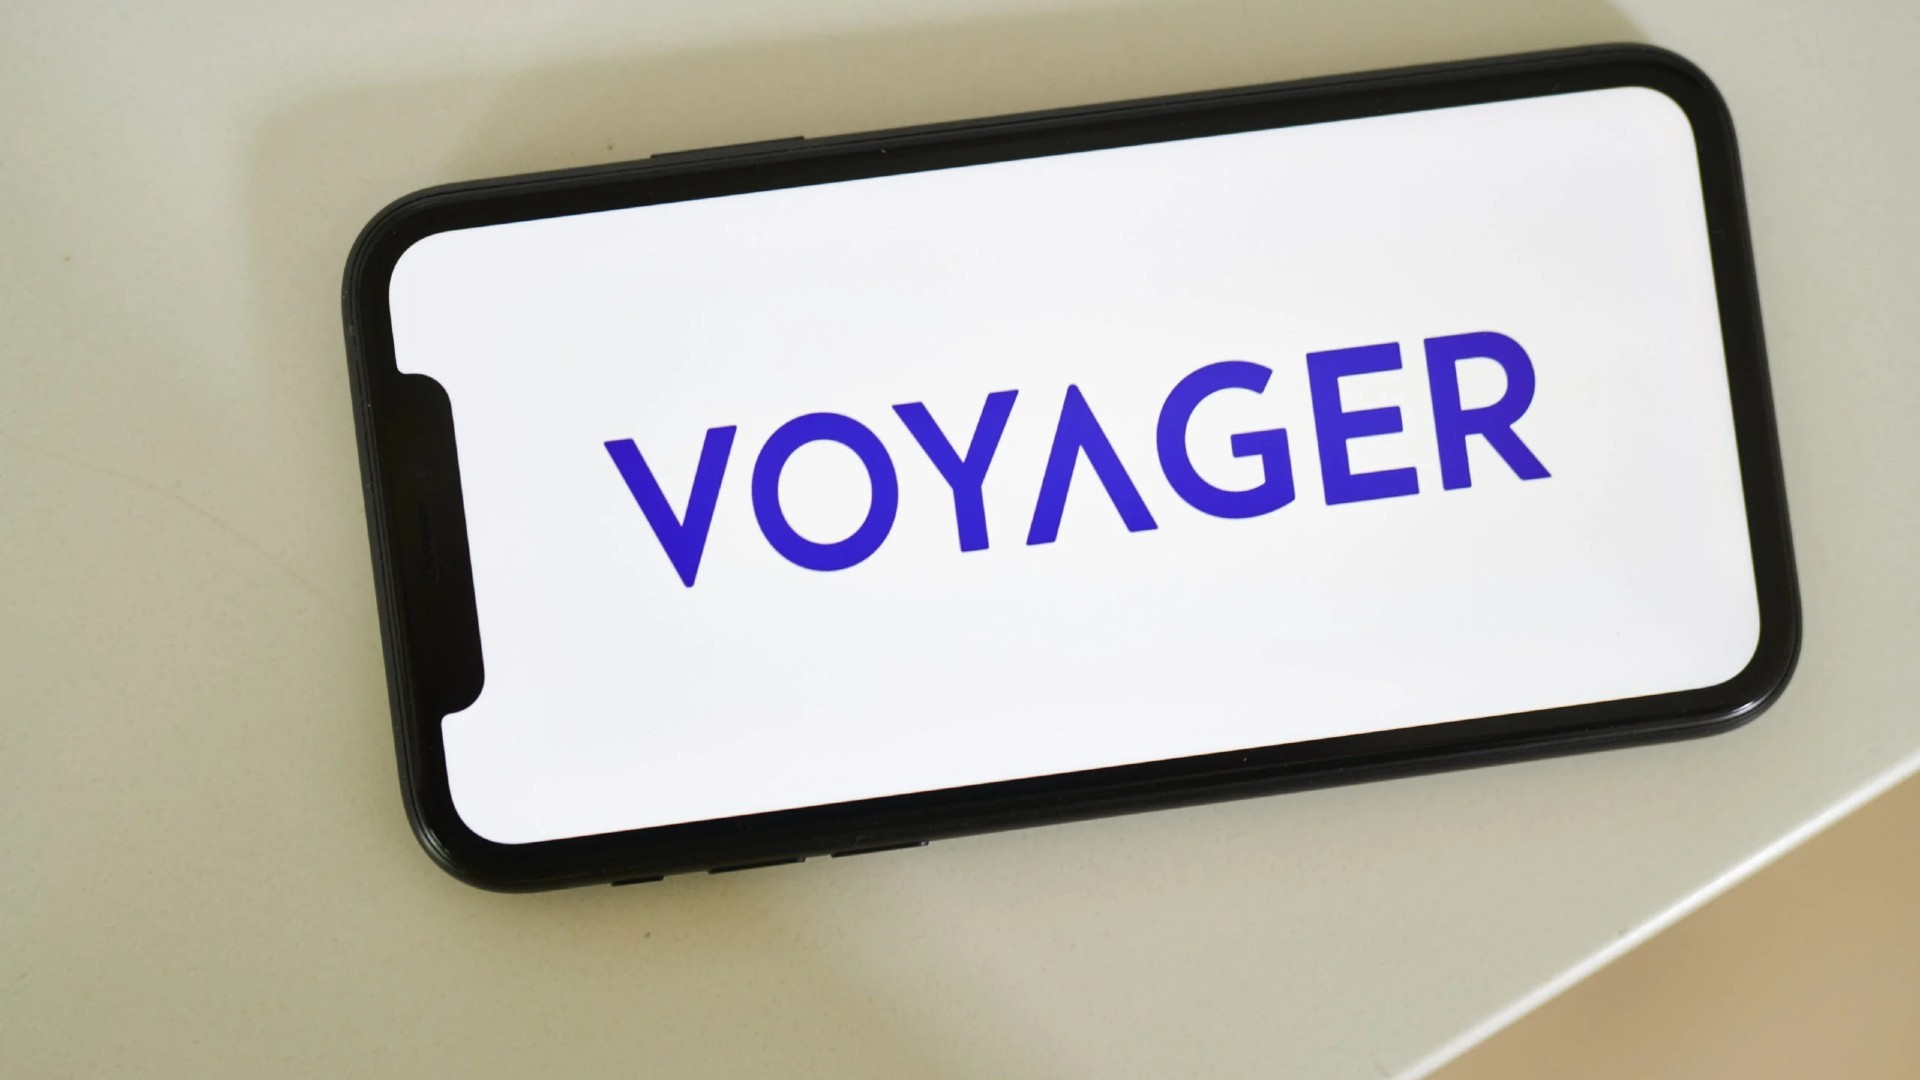 Voyager Digital Gelecek Hafta Varliklarini Acik Artirmaya Cikaracak